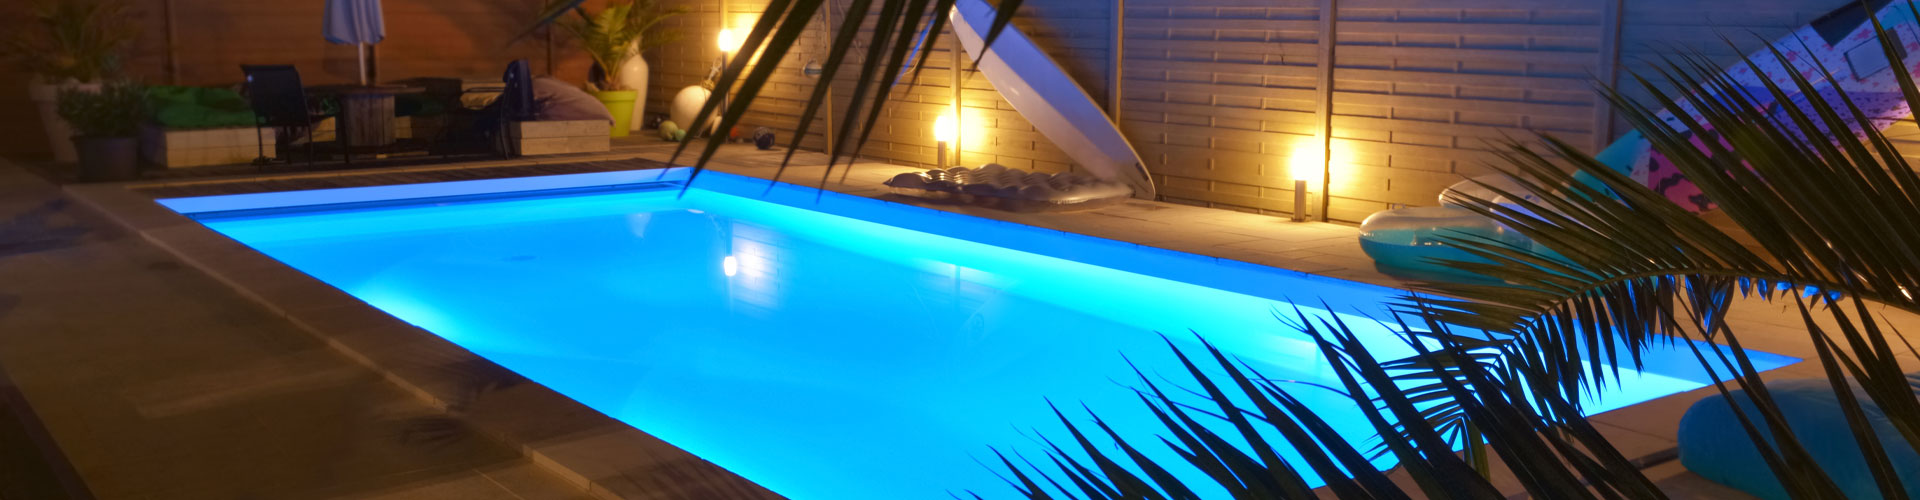 Rubans LED piscine